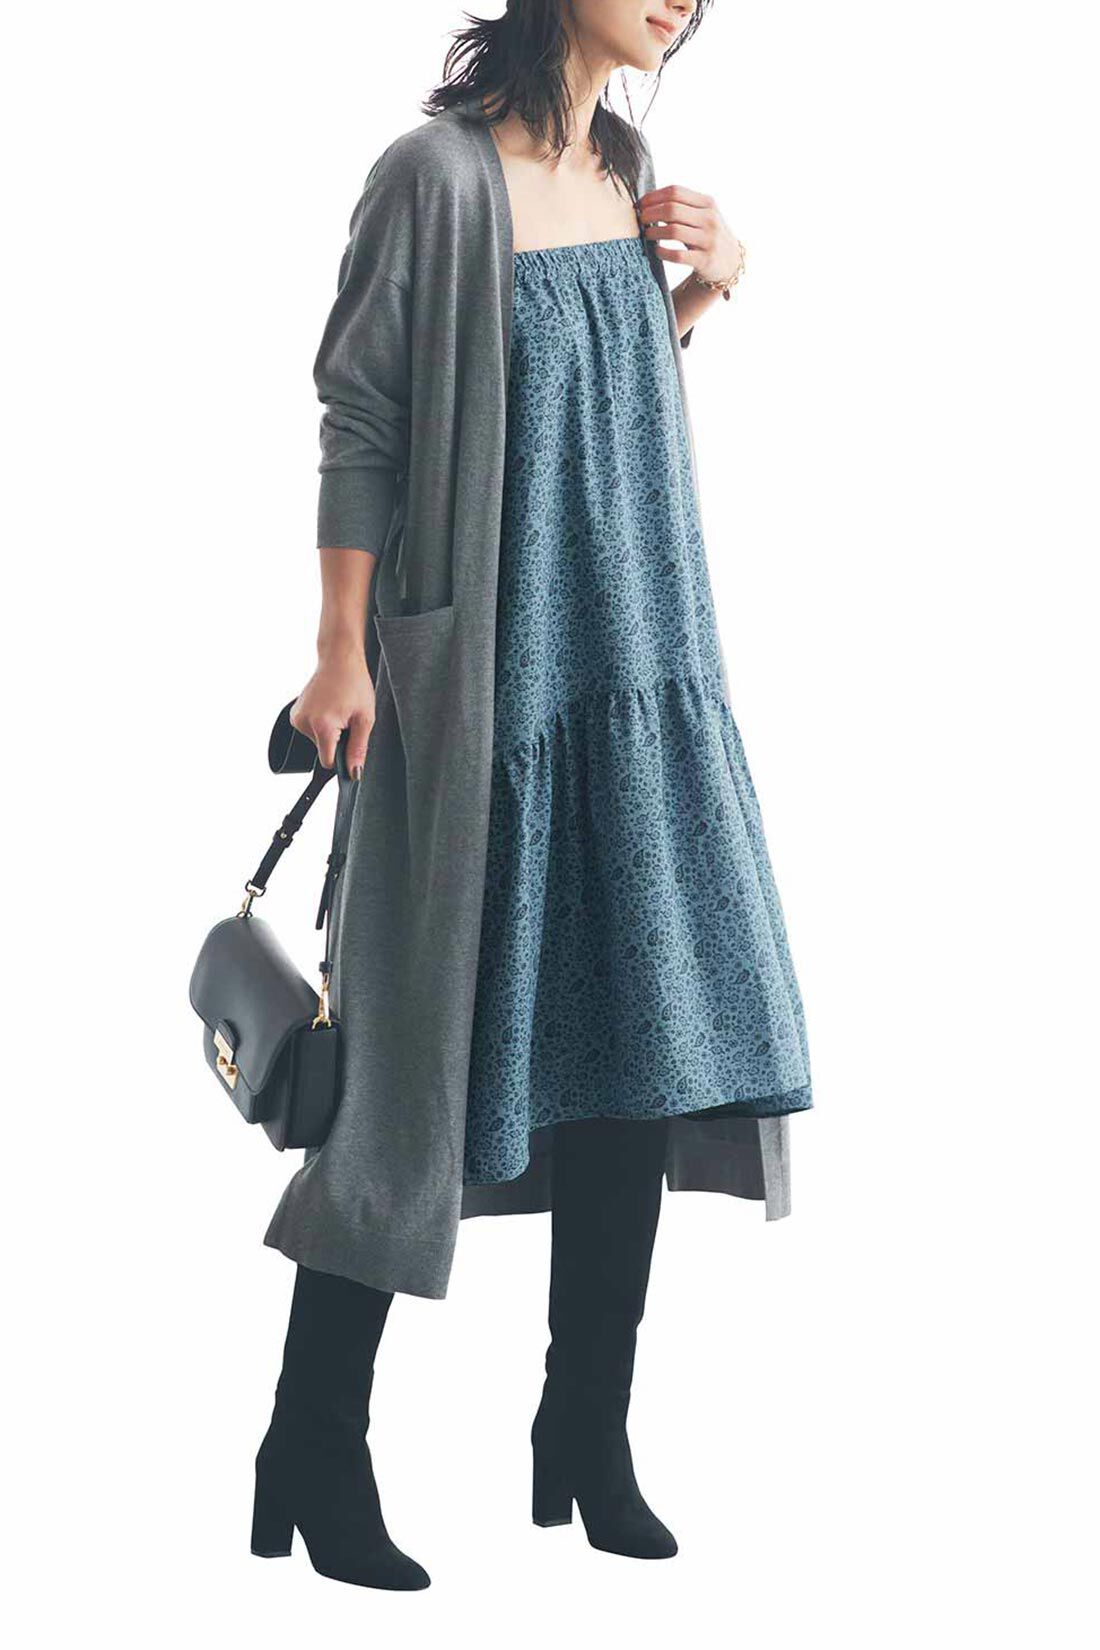 IEDIT[イディット]　福田麻琴さんコラボ 着まわし力抜群の2-WAYスカート〈グレイッシュブルー〉|キャミワンピとしても着られます。